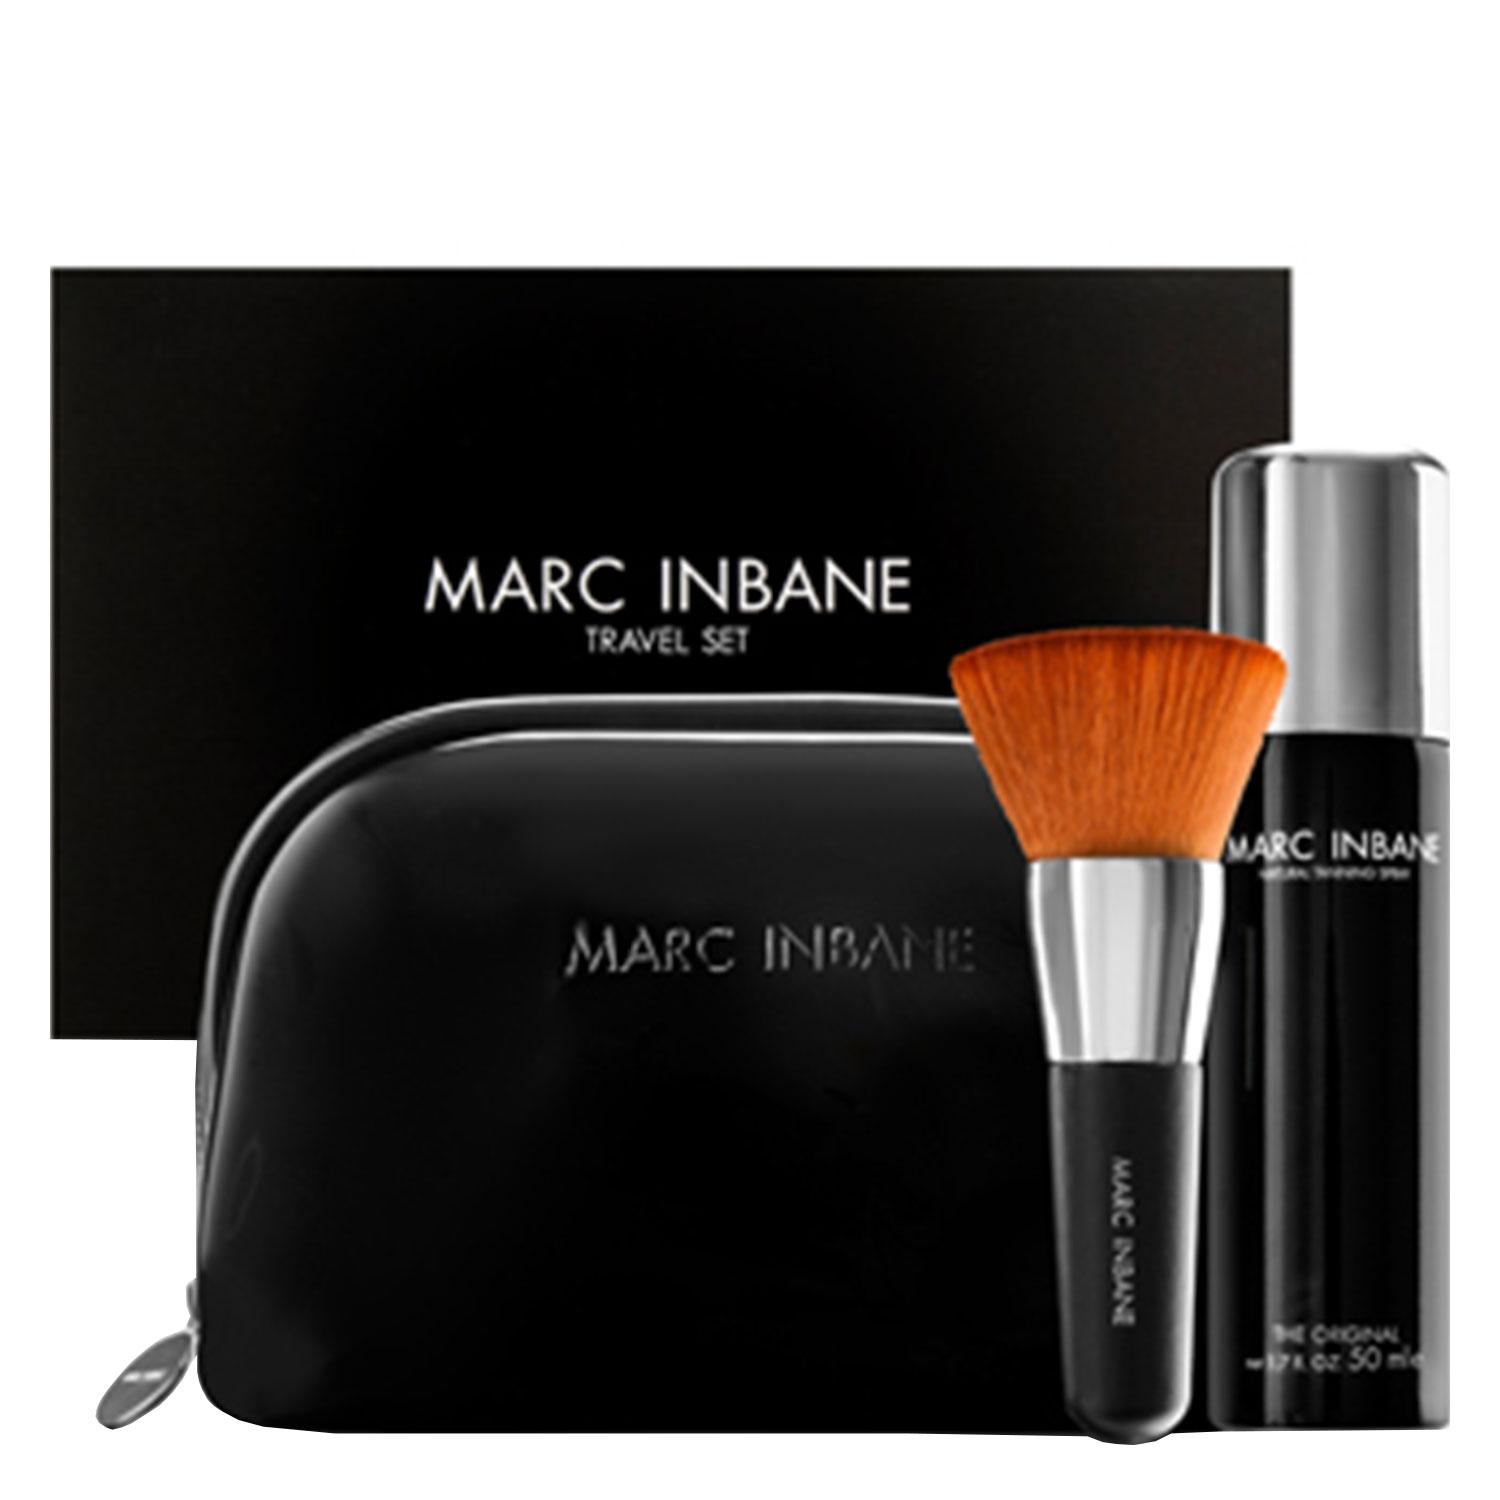 Marc Inbane - Luxe Travel Set